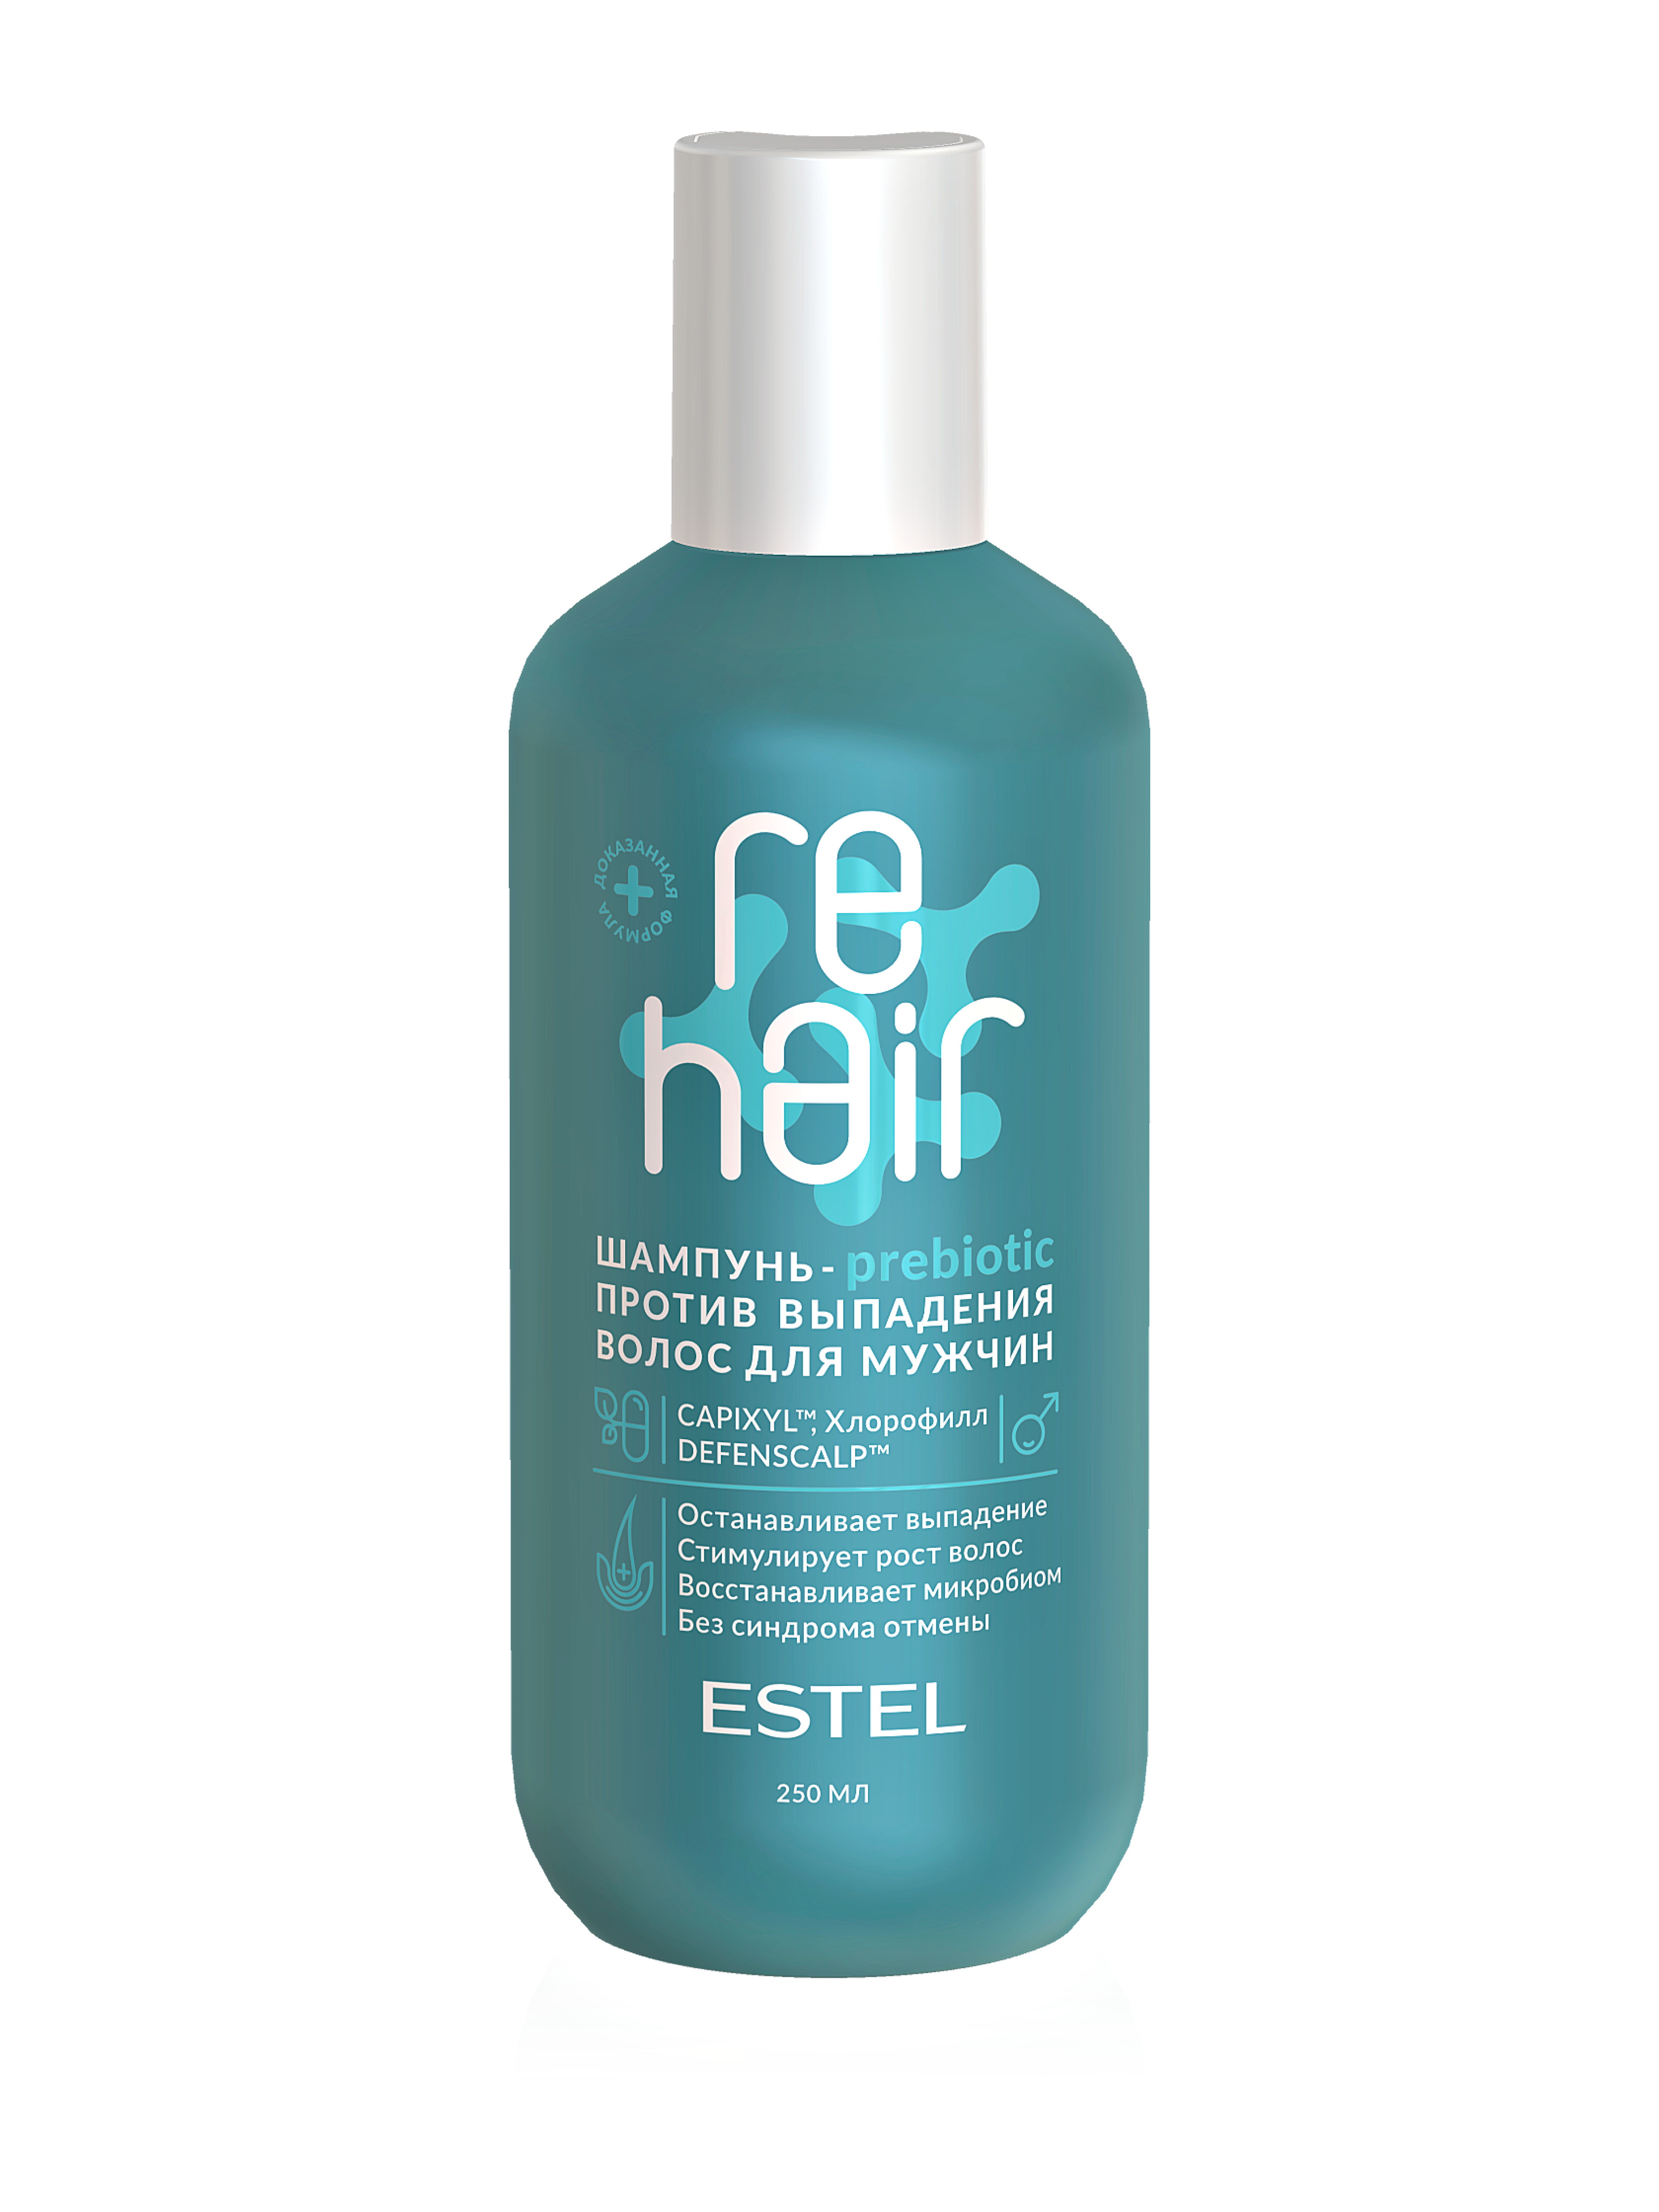 Купить Шампунь-prebiotic ESTEL PROFESSIONAL REHAIR против выпадения волос для мужчин 250 мл